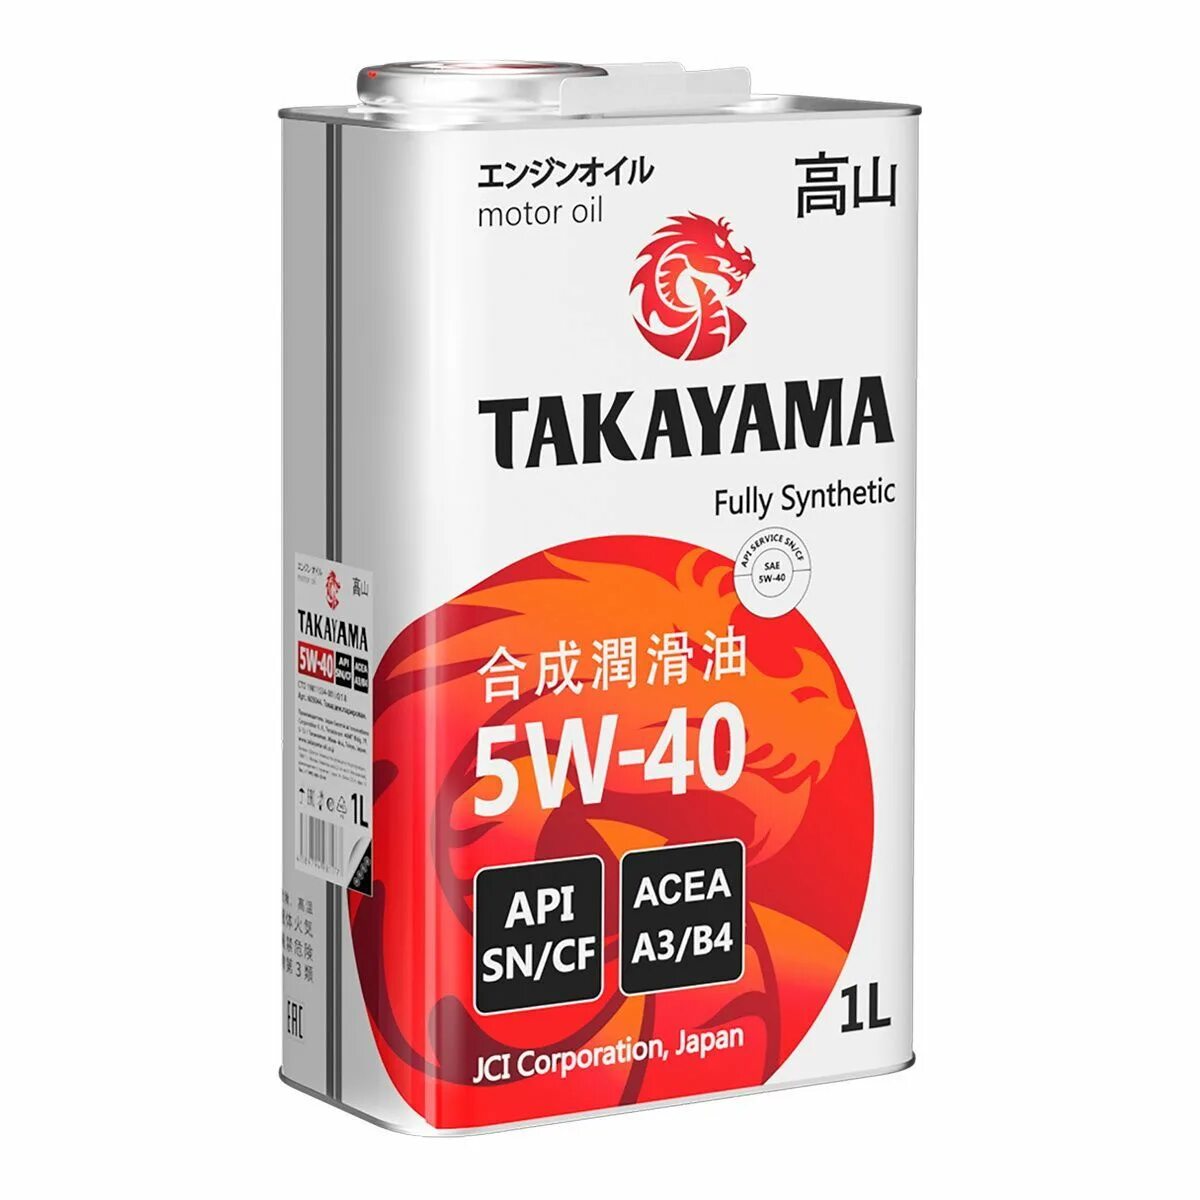 Куплю масло моторное такаяма. Takayama 5w-40 API SN/CF. Takayama SAE 5w-40 API CF, SN a3/b4. 605045 Takayama масло Takayama SAE  5w40. API SN/CF. ACEA a3/b4 (4л). Takayama 605521промопак Takayama акция 5w40 SN/CF синтетика 4л + 1л.